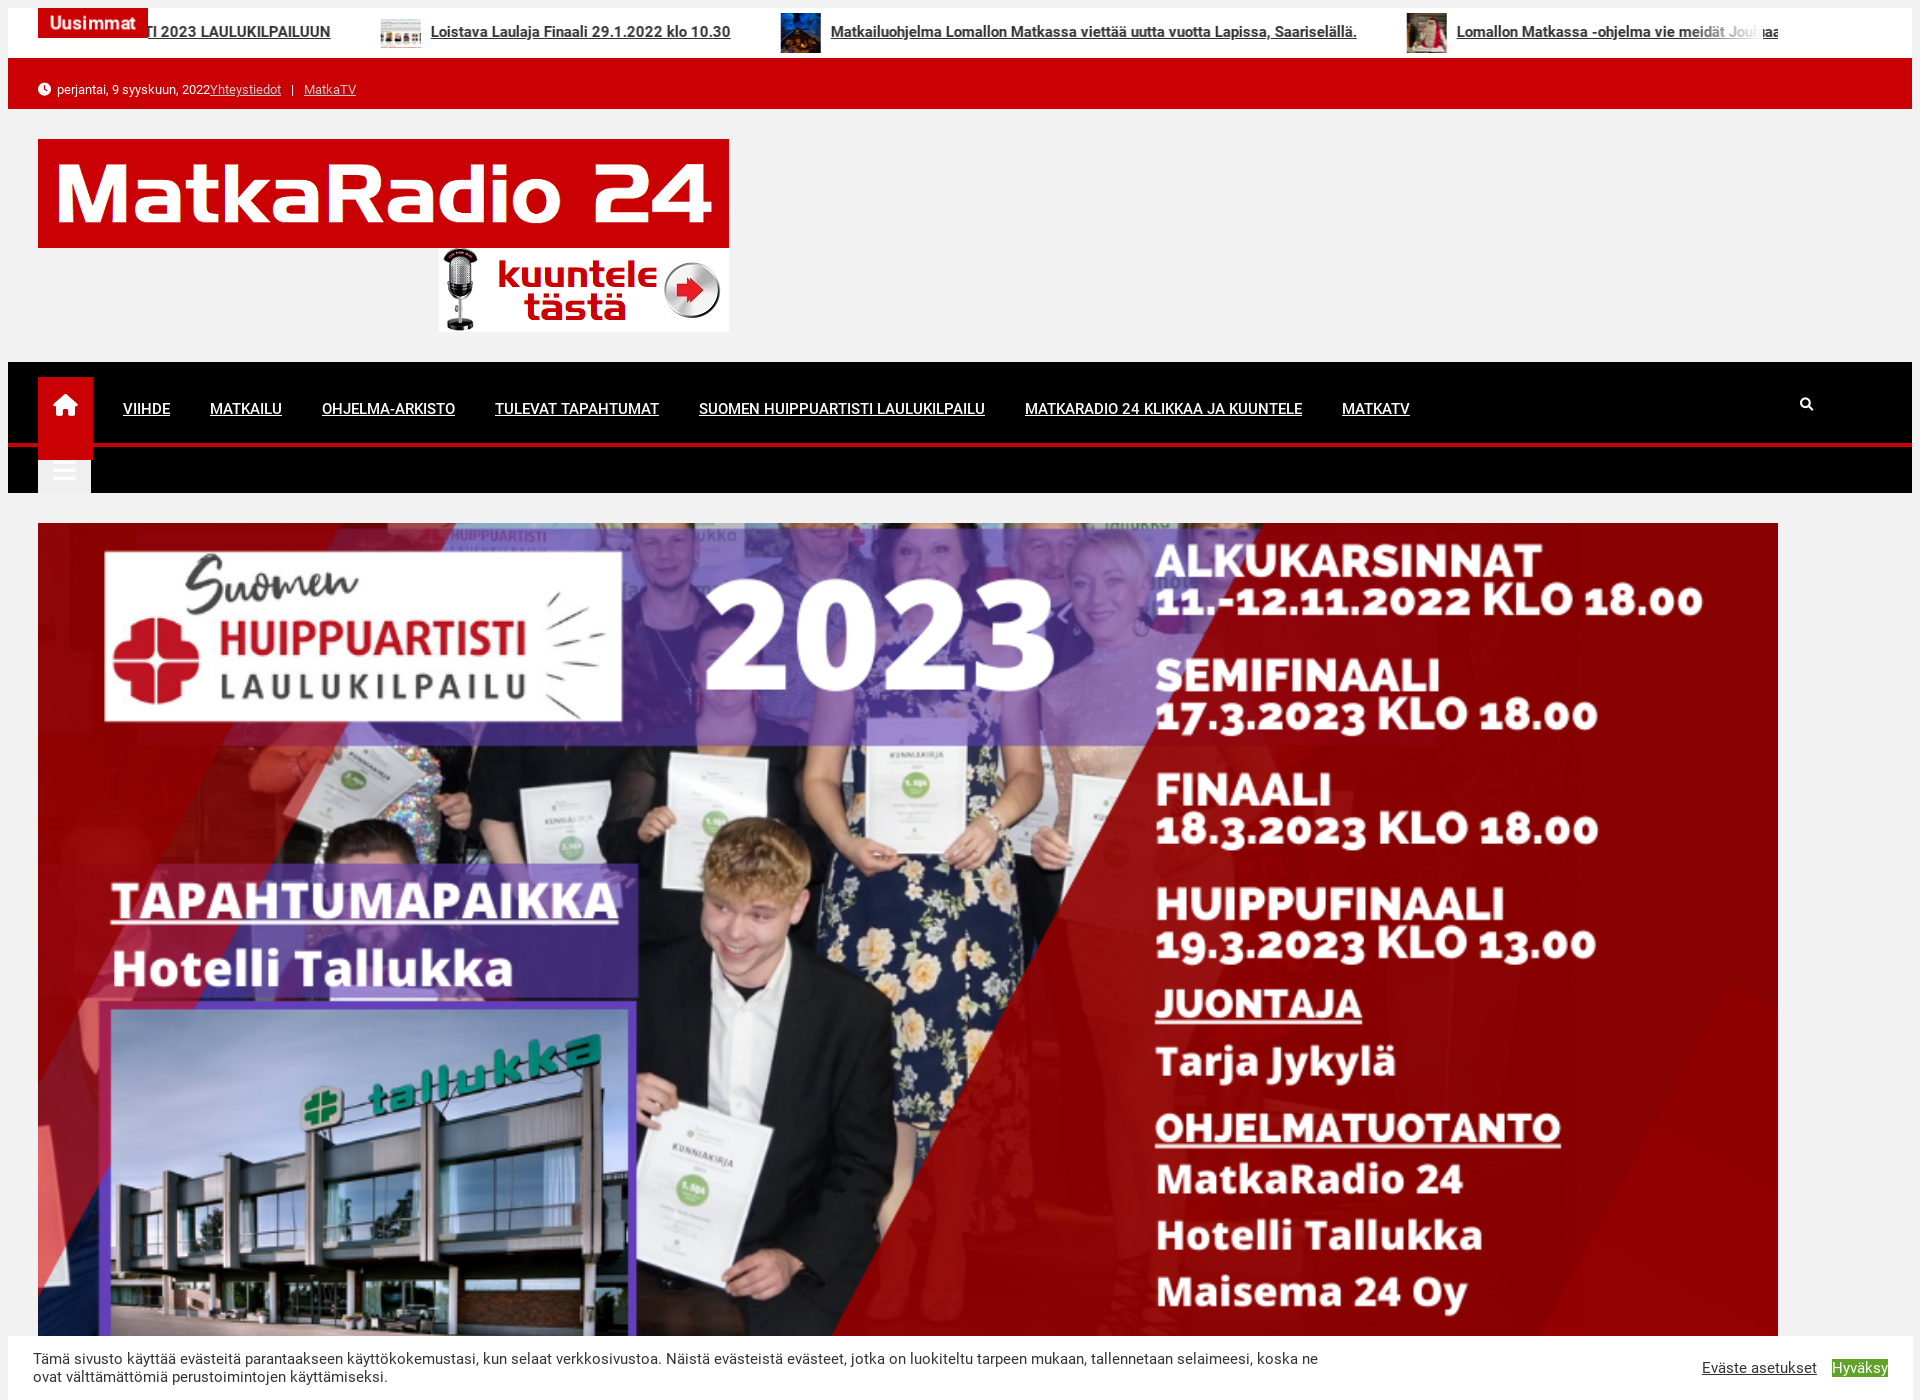 Näyttökuva matkaradio.fi